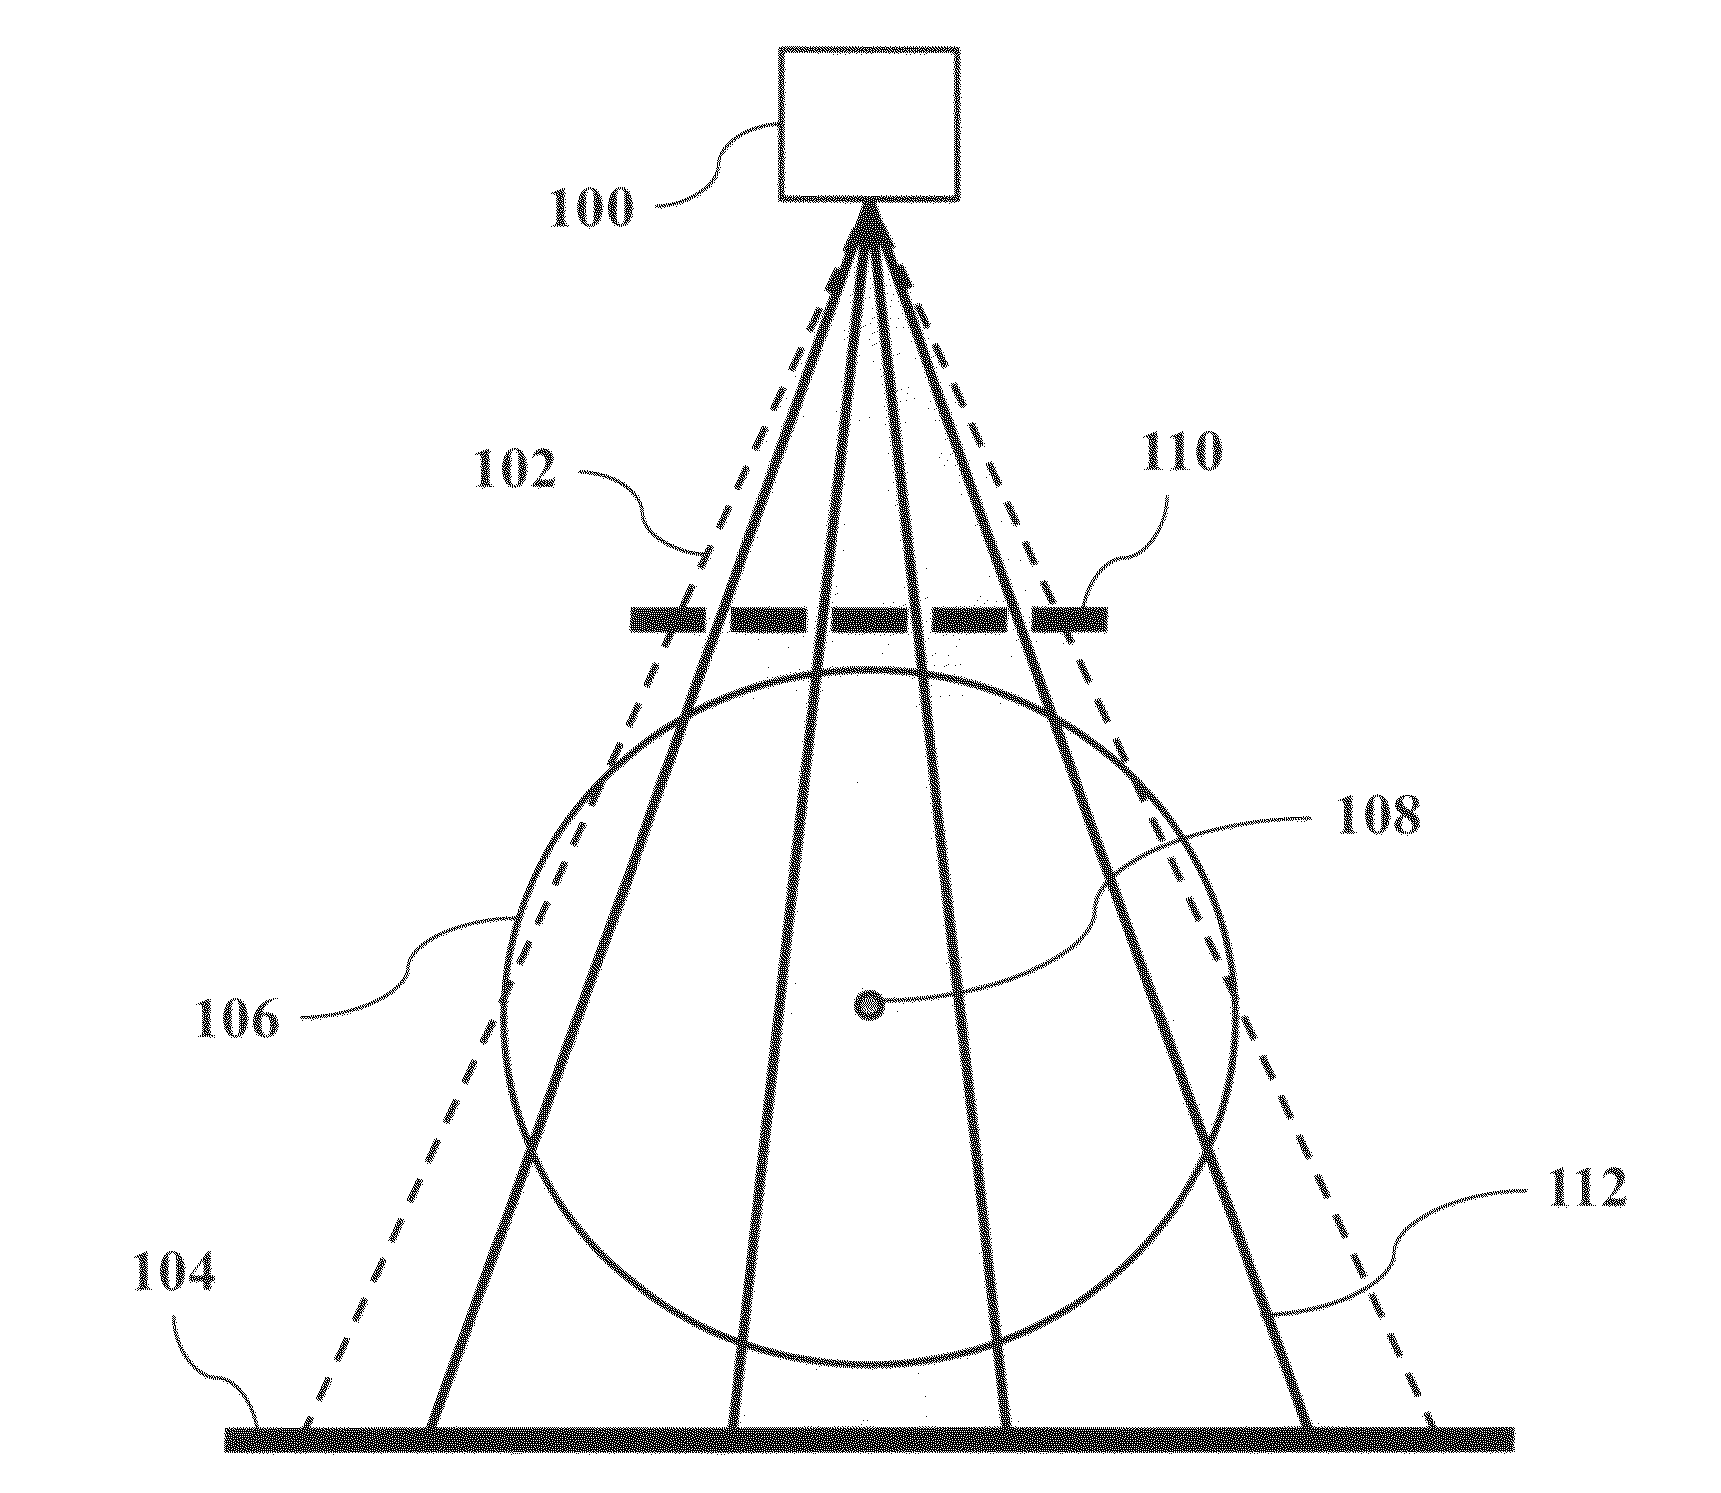 Cone-beam CT imaging scheme